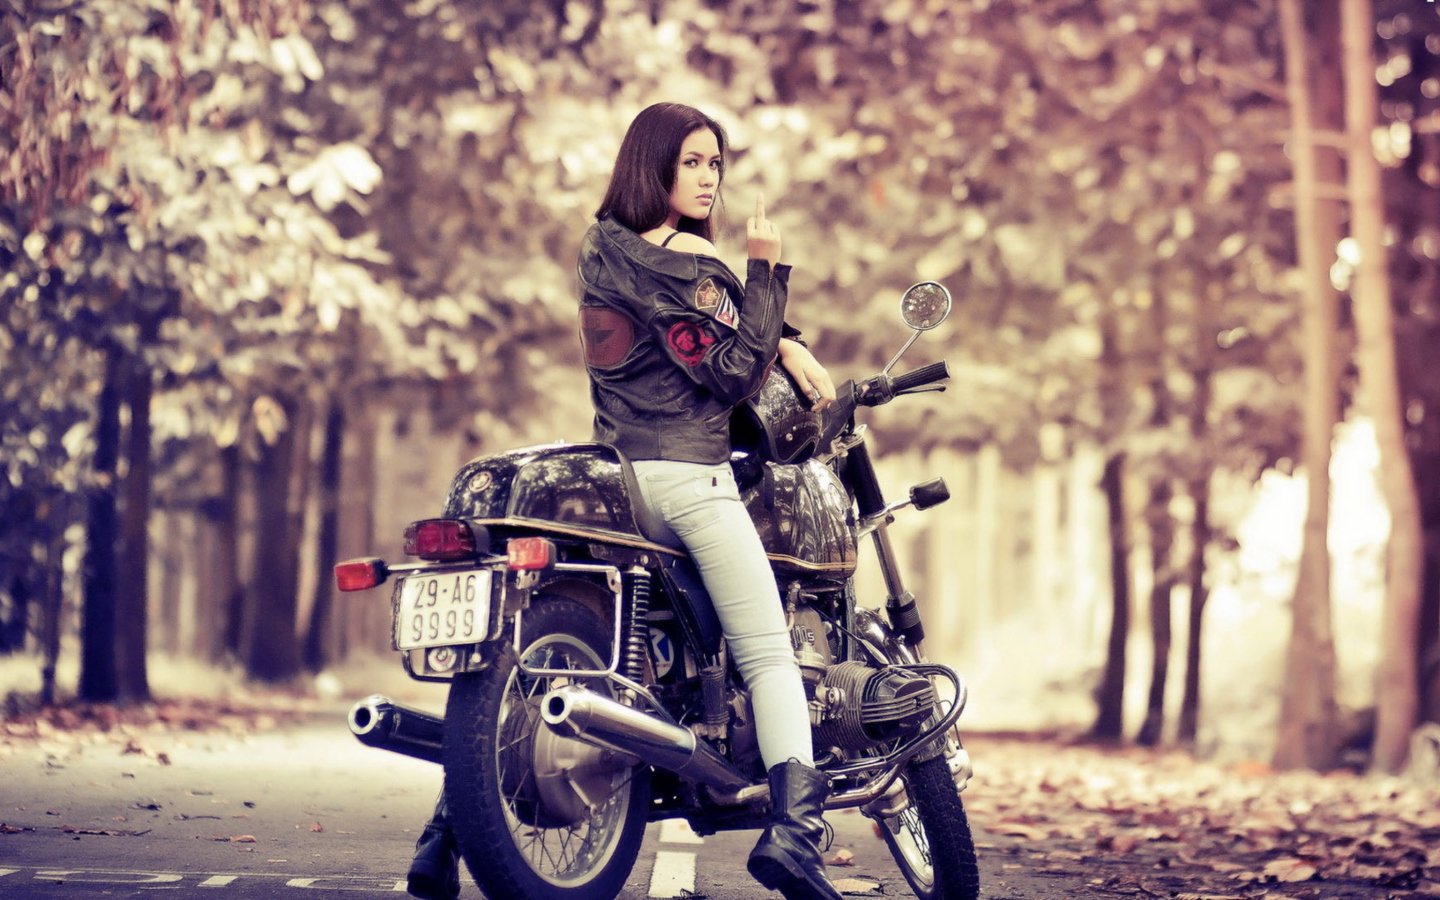 Moto Girl wallpaper 1440x900